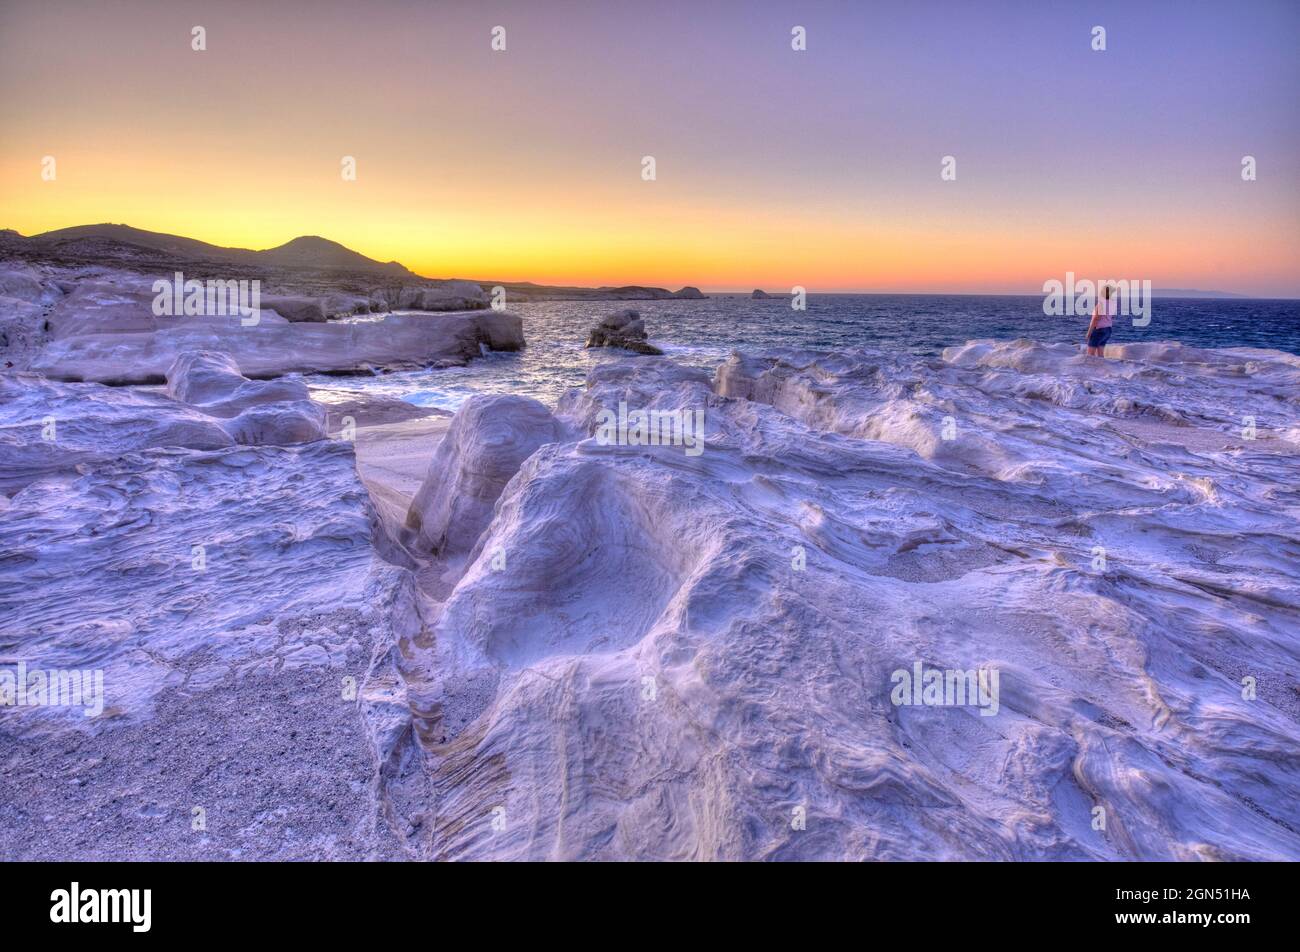 Los acantilados blancos de la playa de Sarakiniko al atardecer, Milos, Grecia Foto de stock